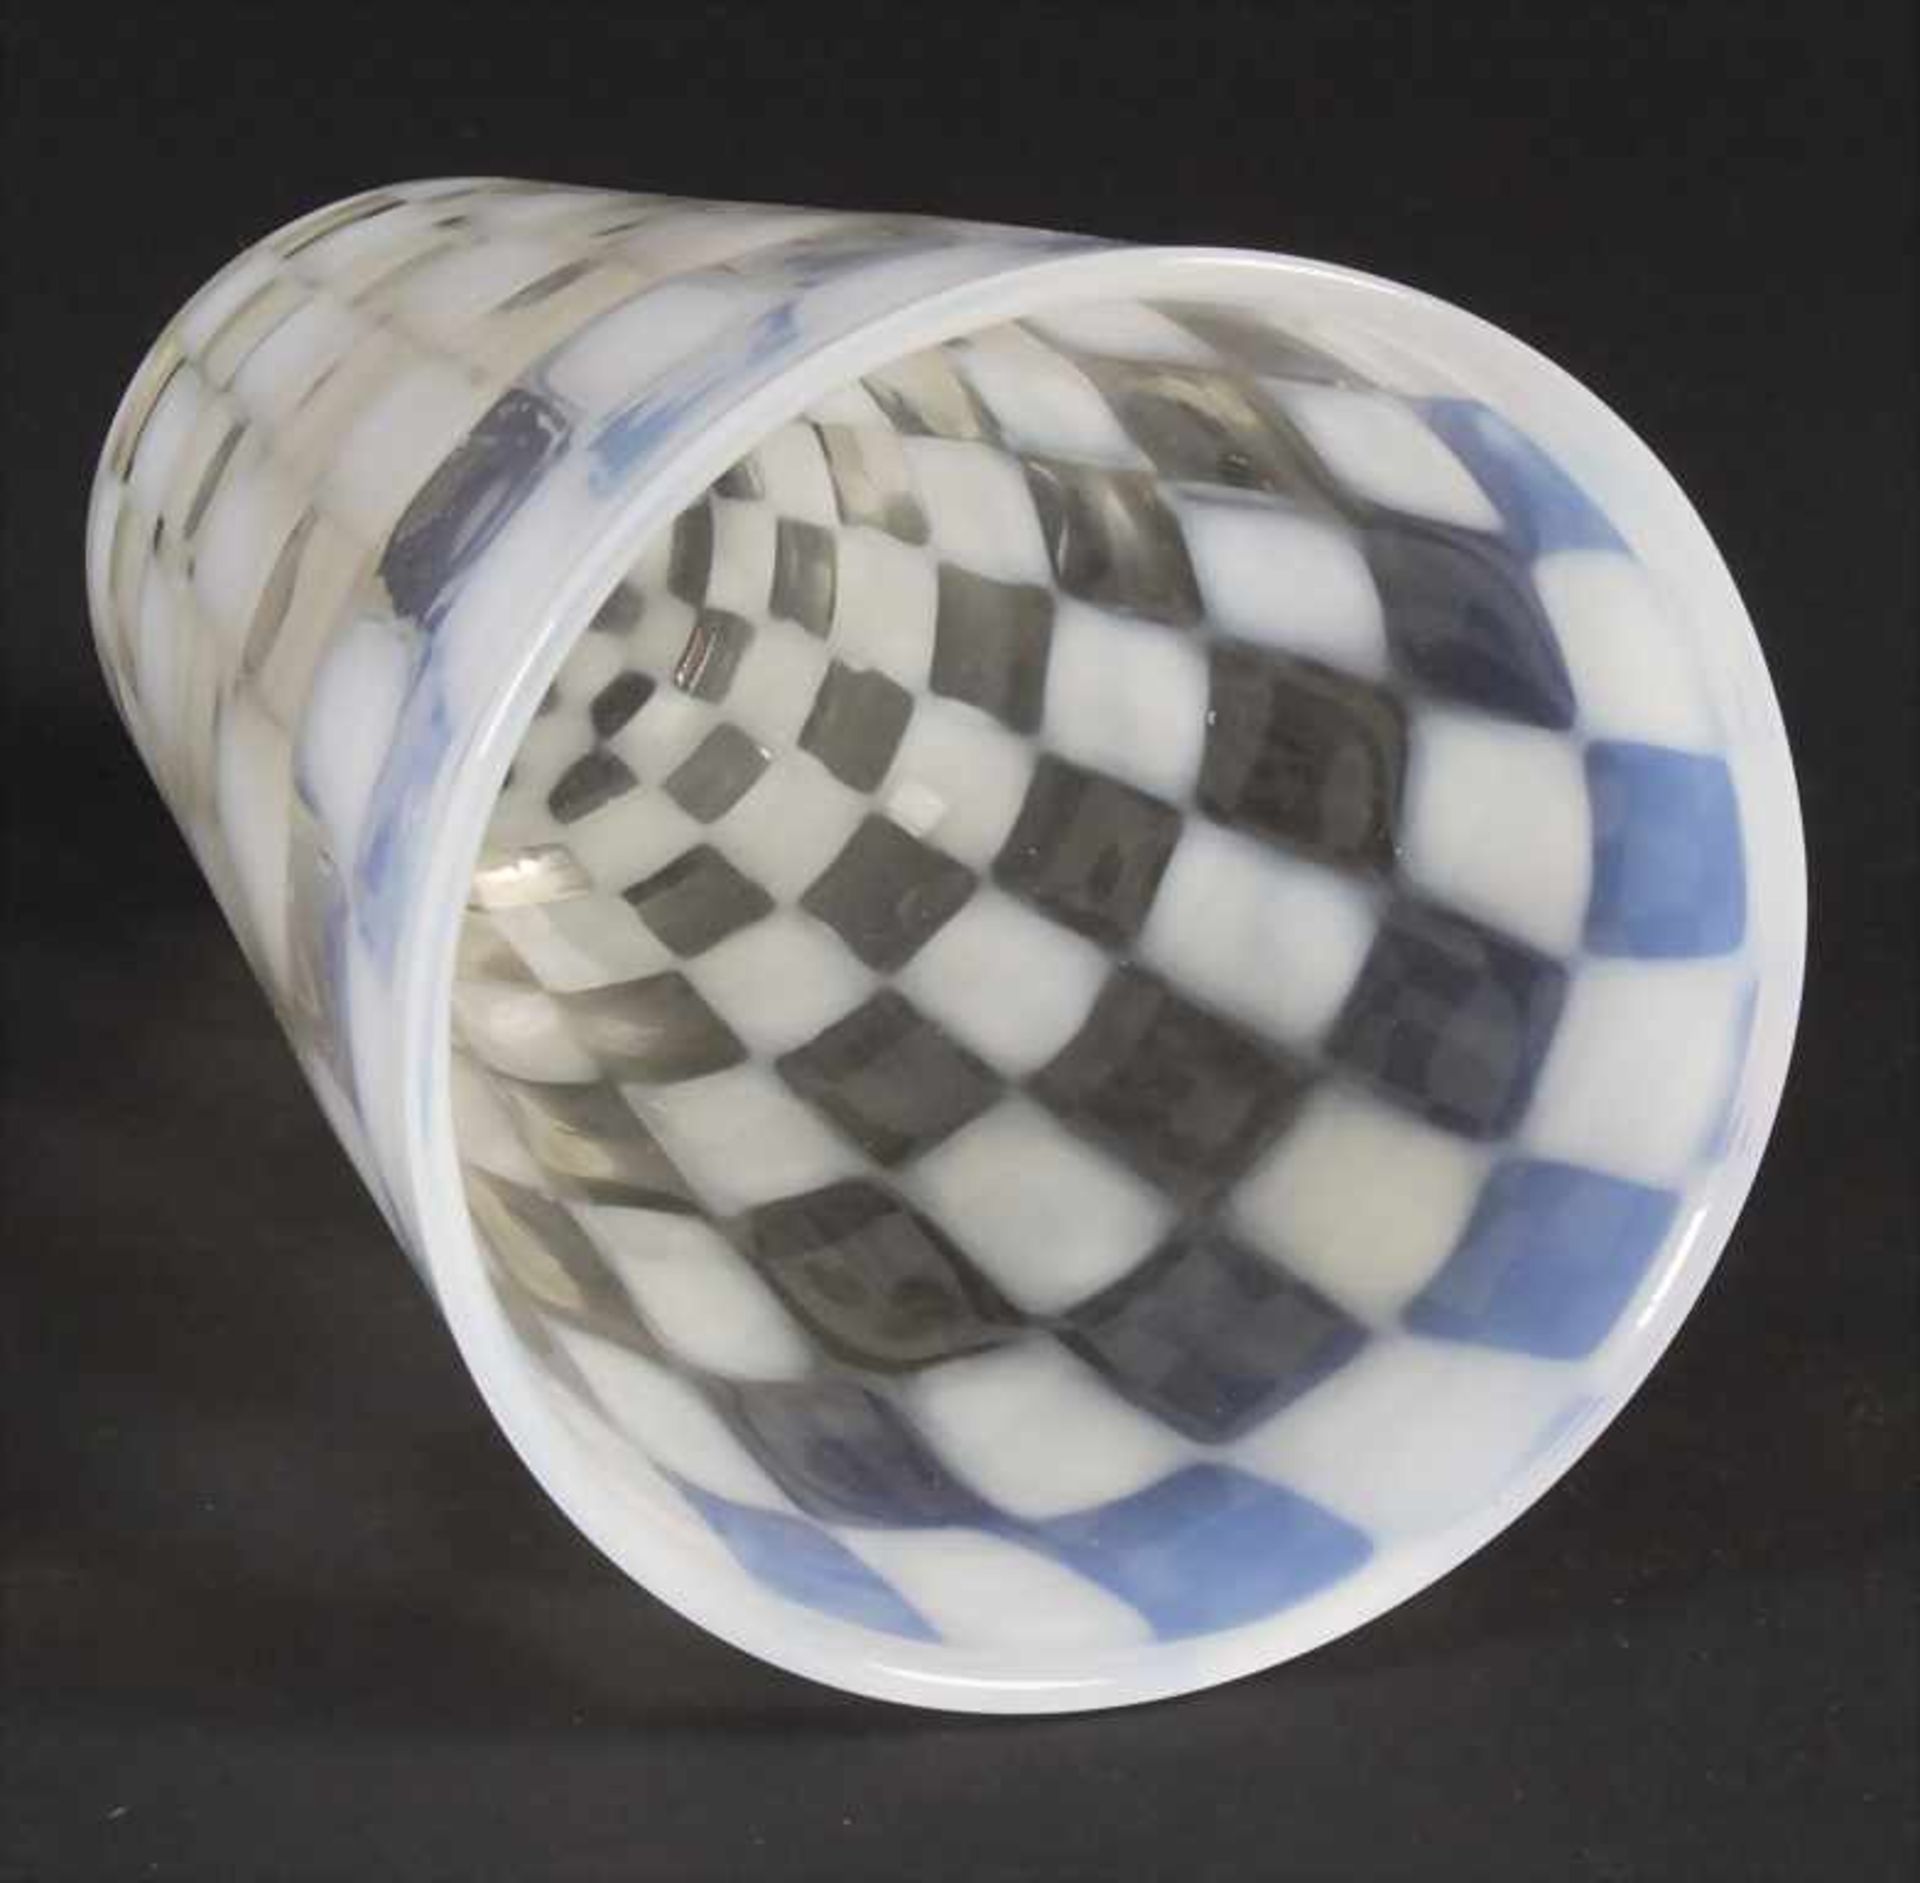 Glasziervase / A decorative glass vase, wohl Brovier & Toso, Murano - Bild 3 aus 4